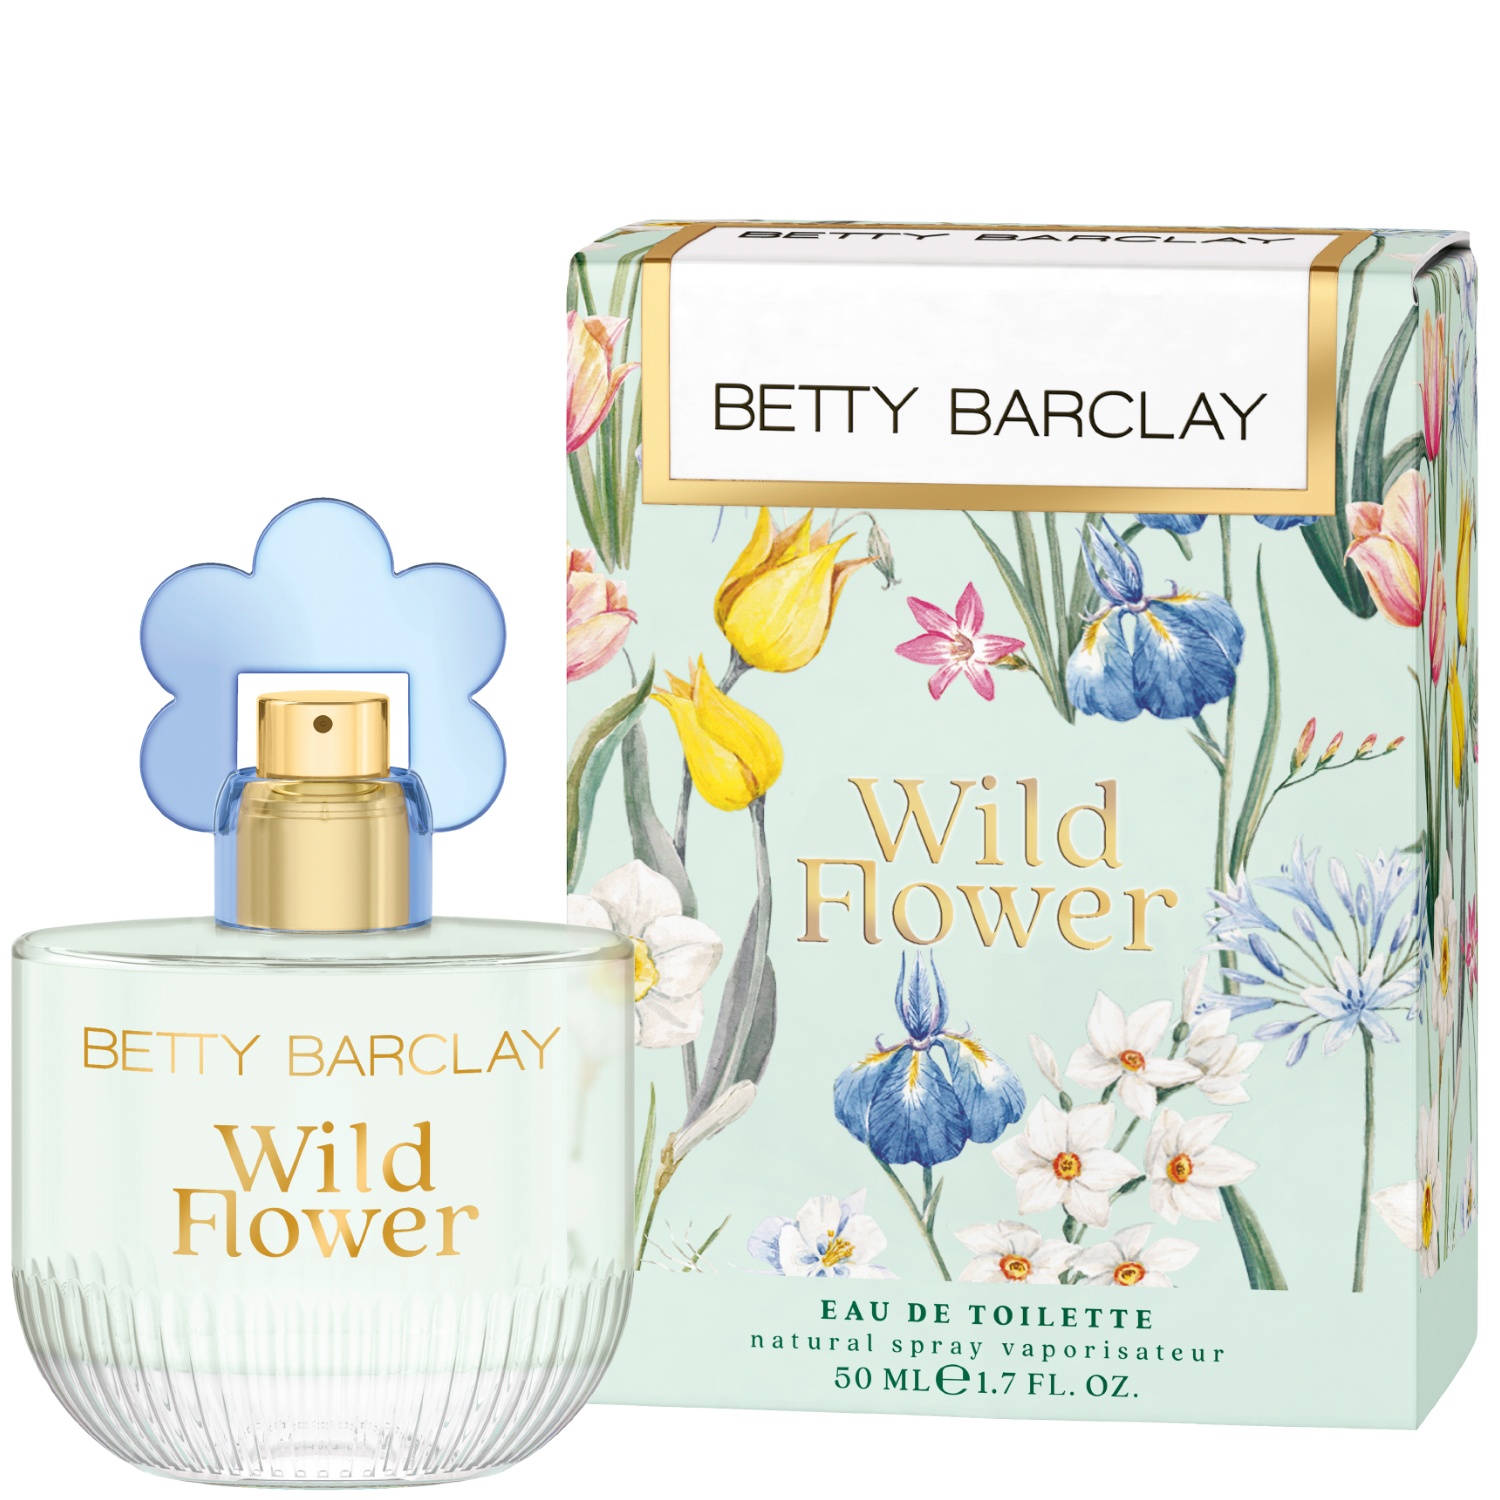 Betty Barclay Wild Flower Eau de Toilette 50ml